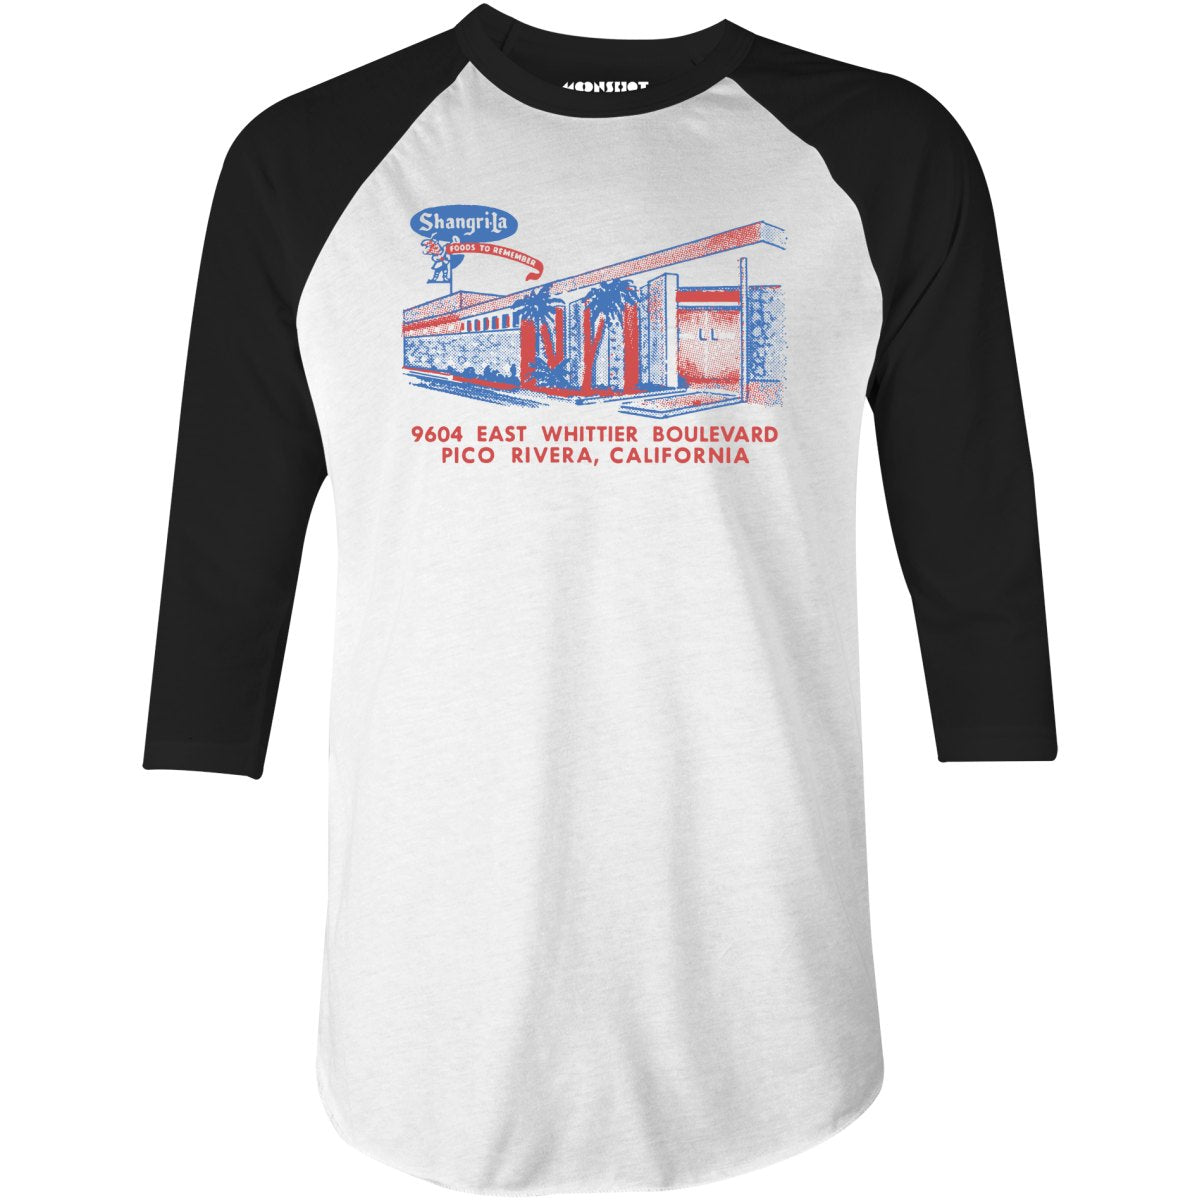 Shangri-La - Pico Rivera, CA - Vintage Restaurant - 3/4 Sleeve Raglan T-Shirt